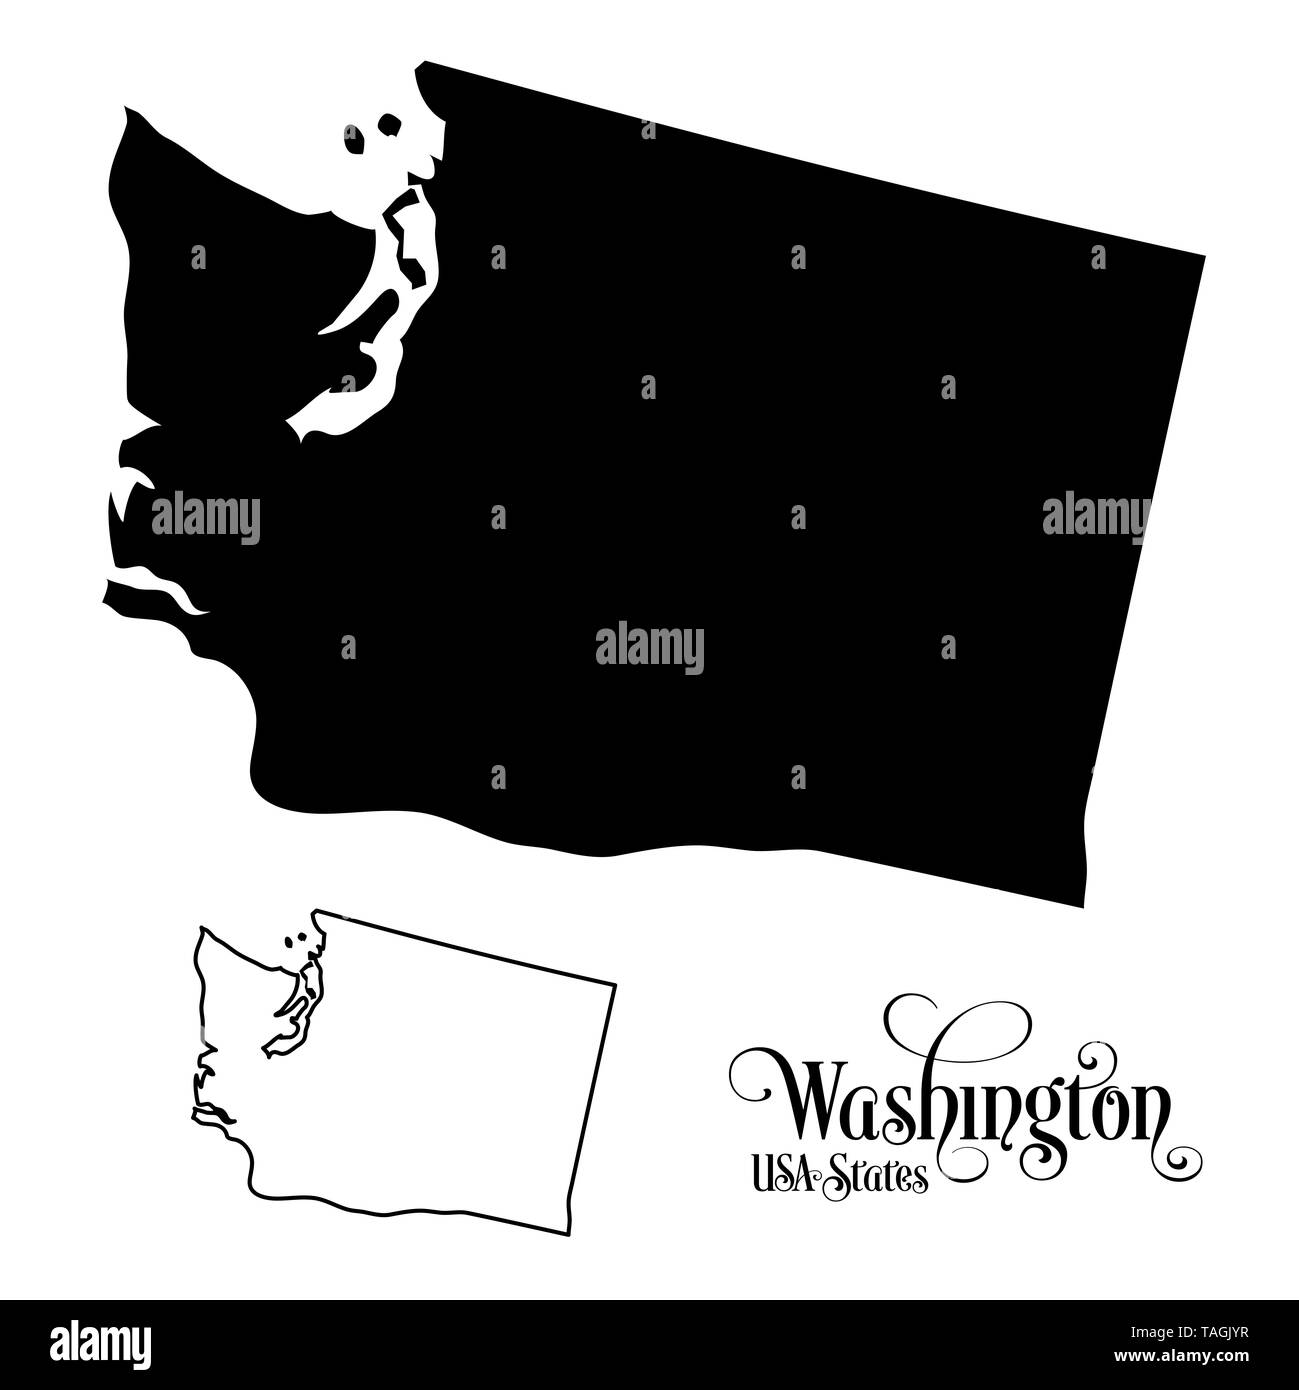 Map of The United States of America (USA) State of Washington - Illustration on White Background. Stock Photo